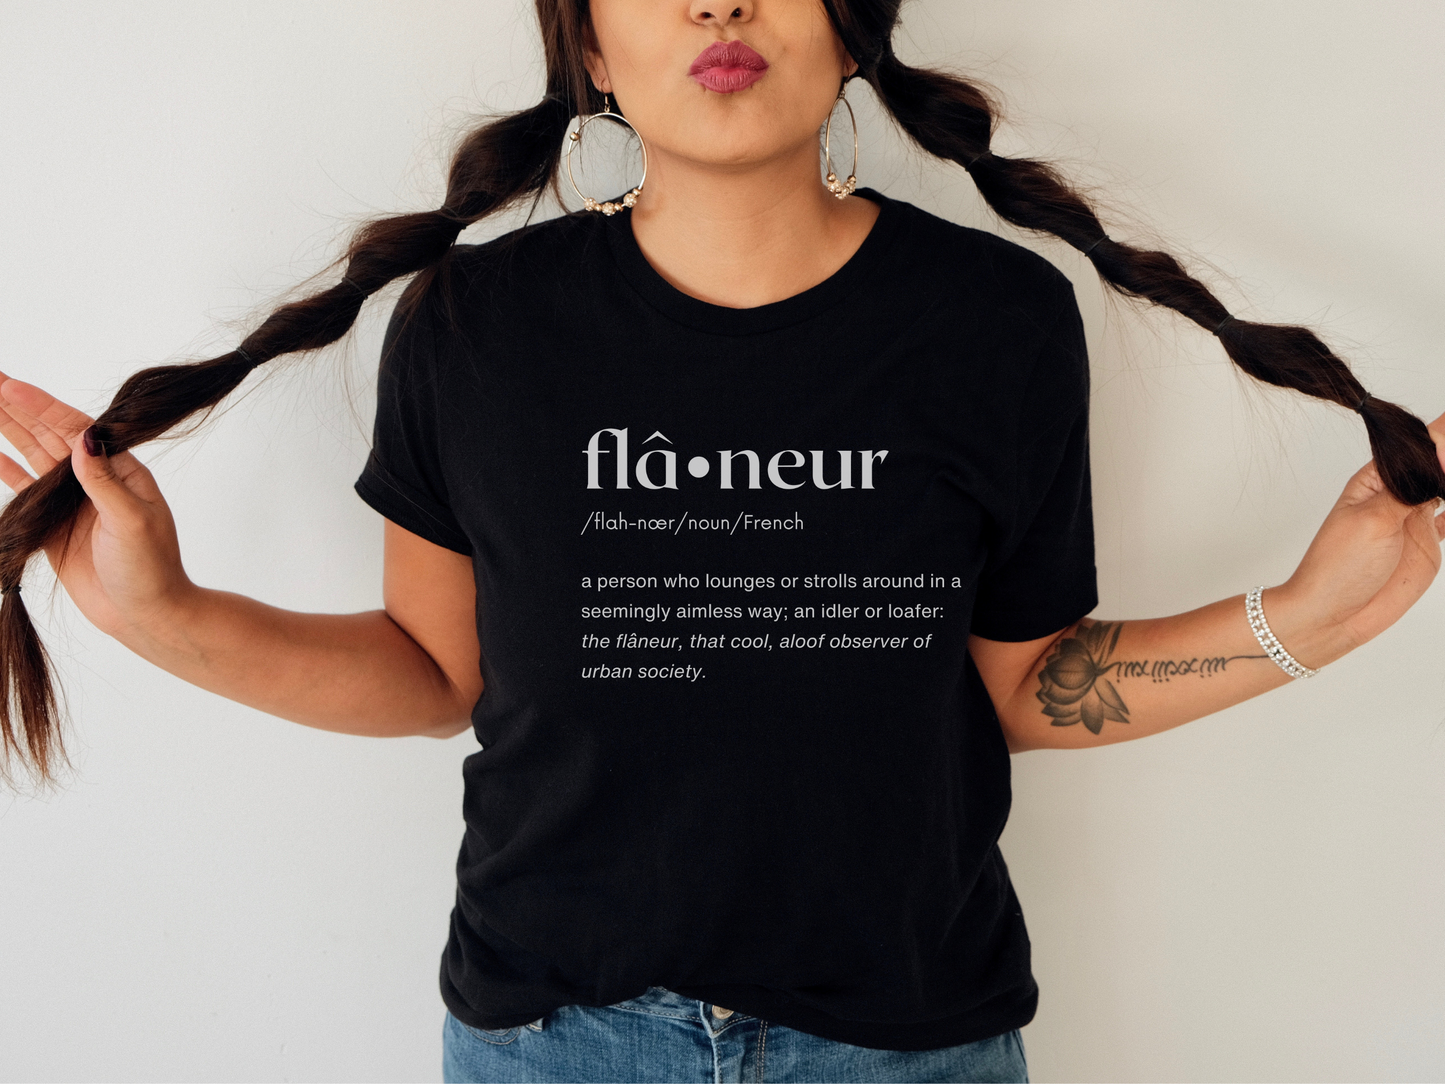 Flâneur "Wanderer" French Word T-Shirt in Black